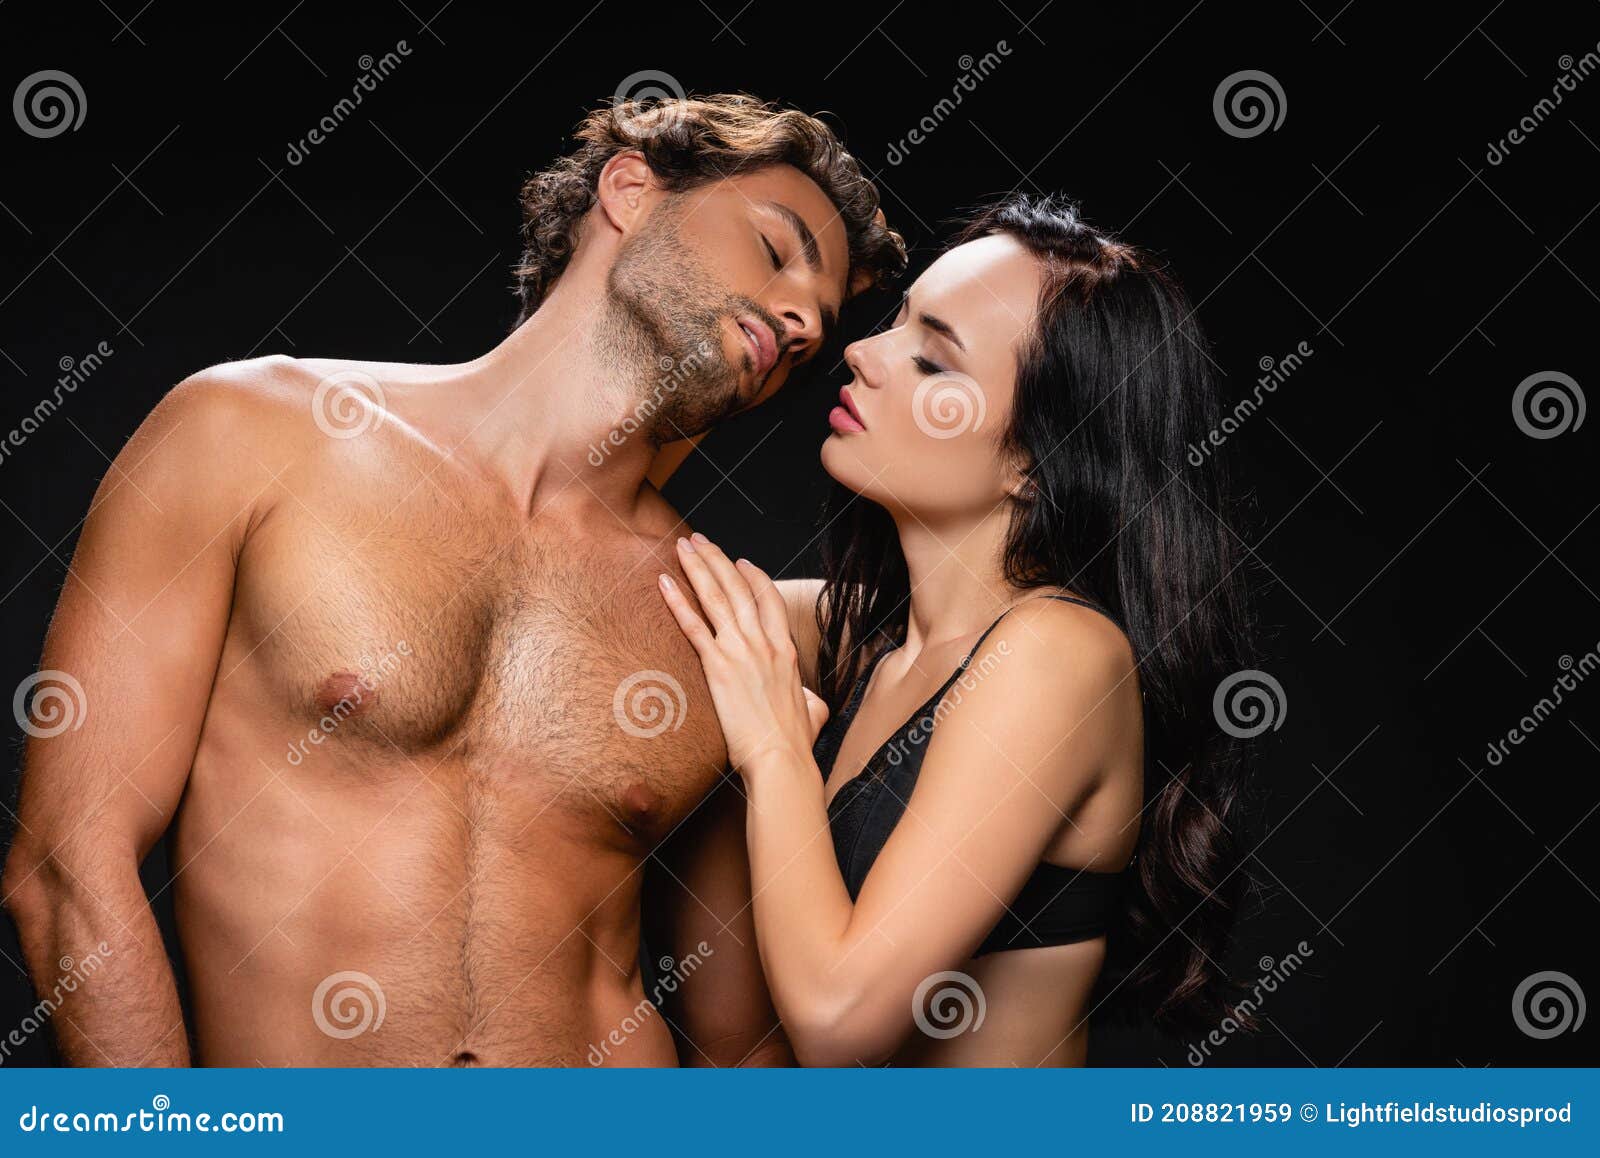 Hombre Apasionado Sin Camisa Y Mujer Sensual Imagen de archivo - Imagen de beso, 208821959